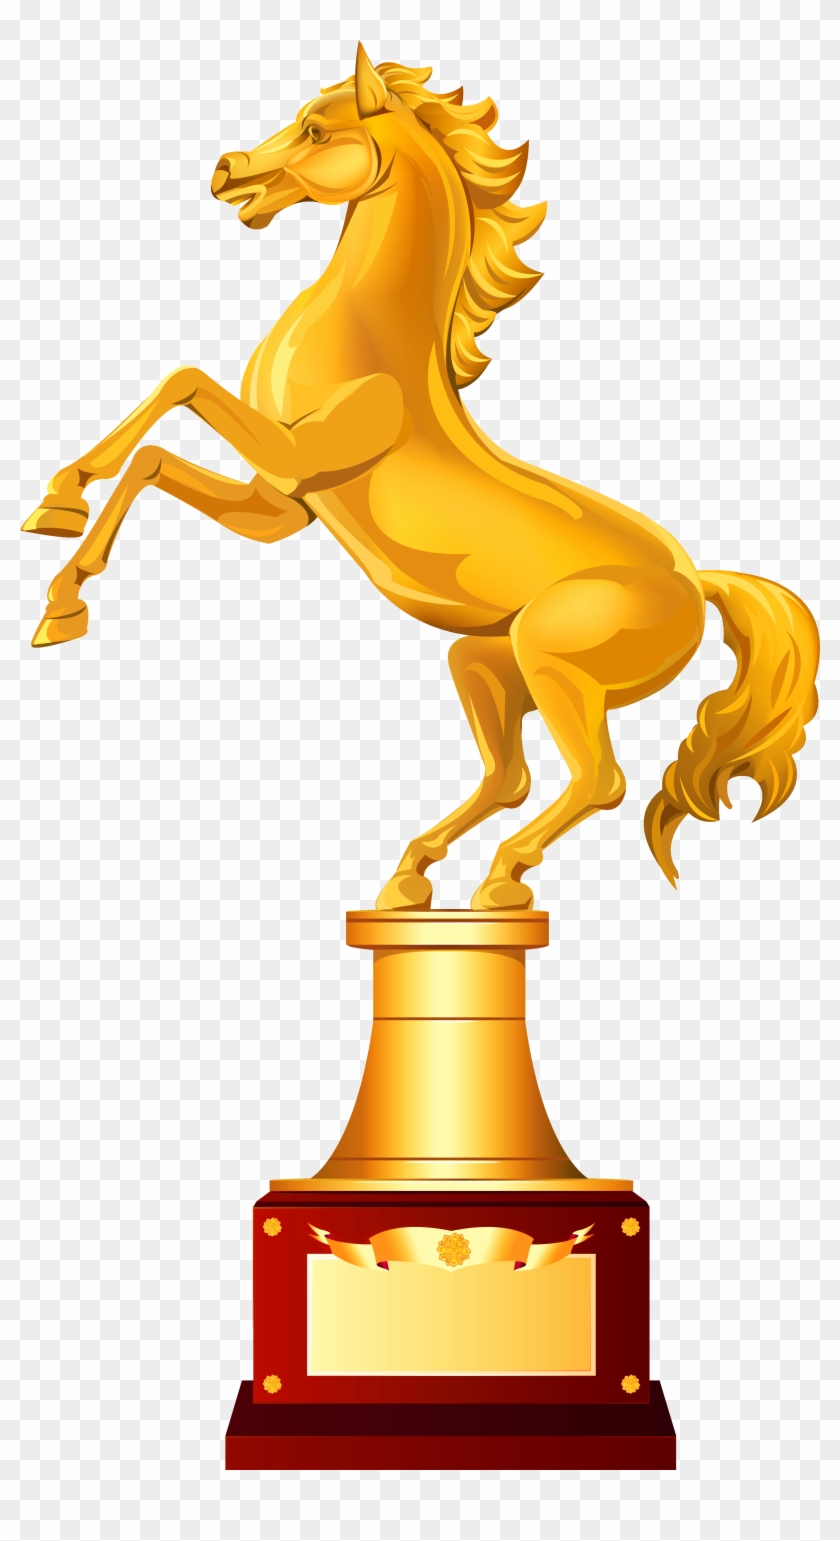 Trophy - Golden Horse Awards Trophy #399939